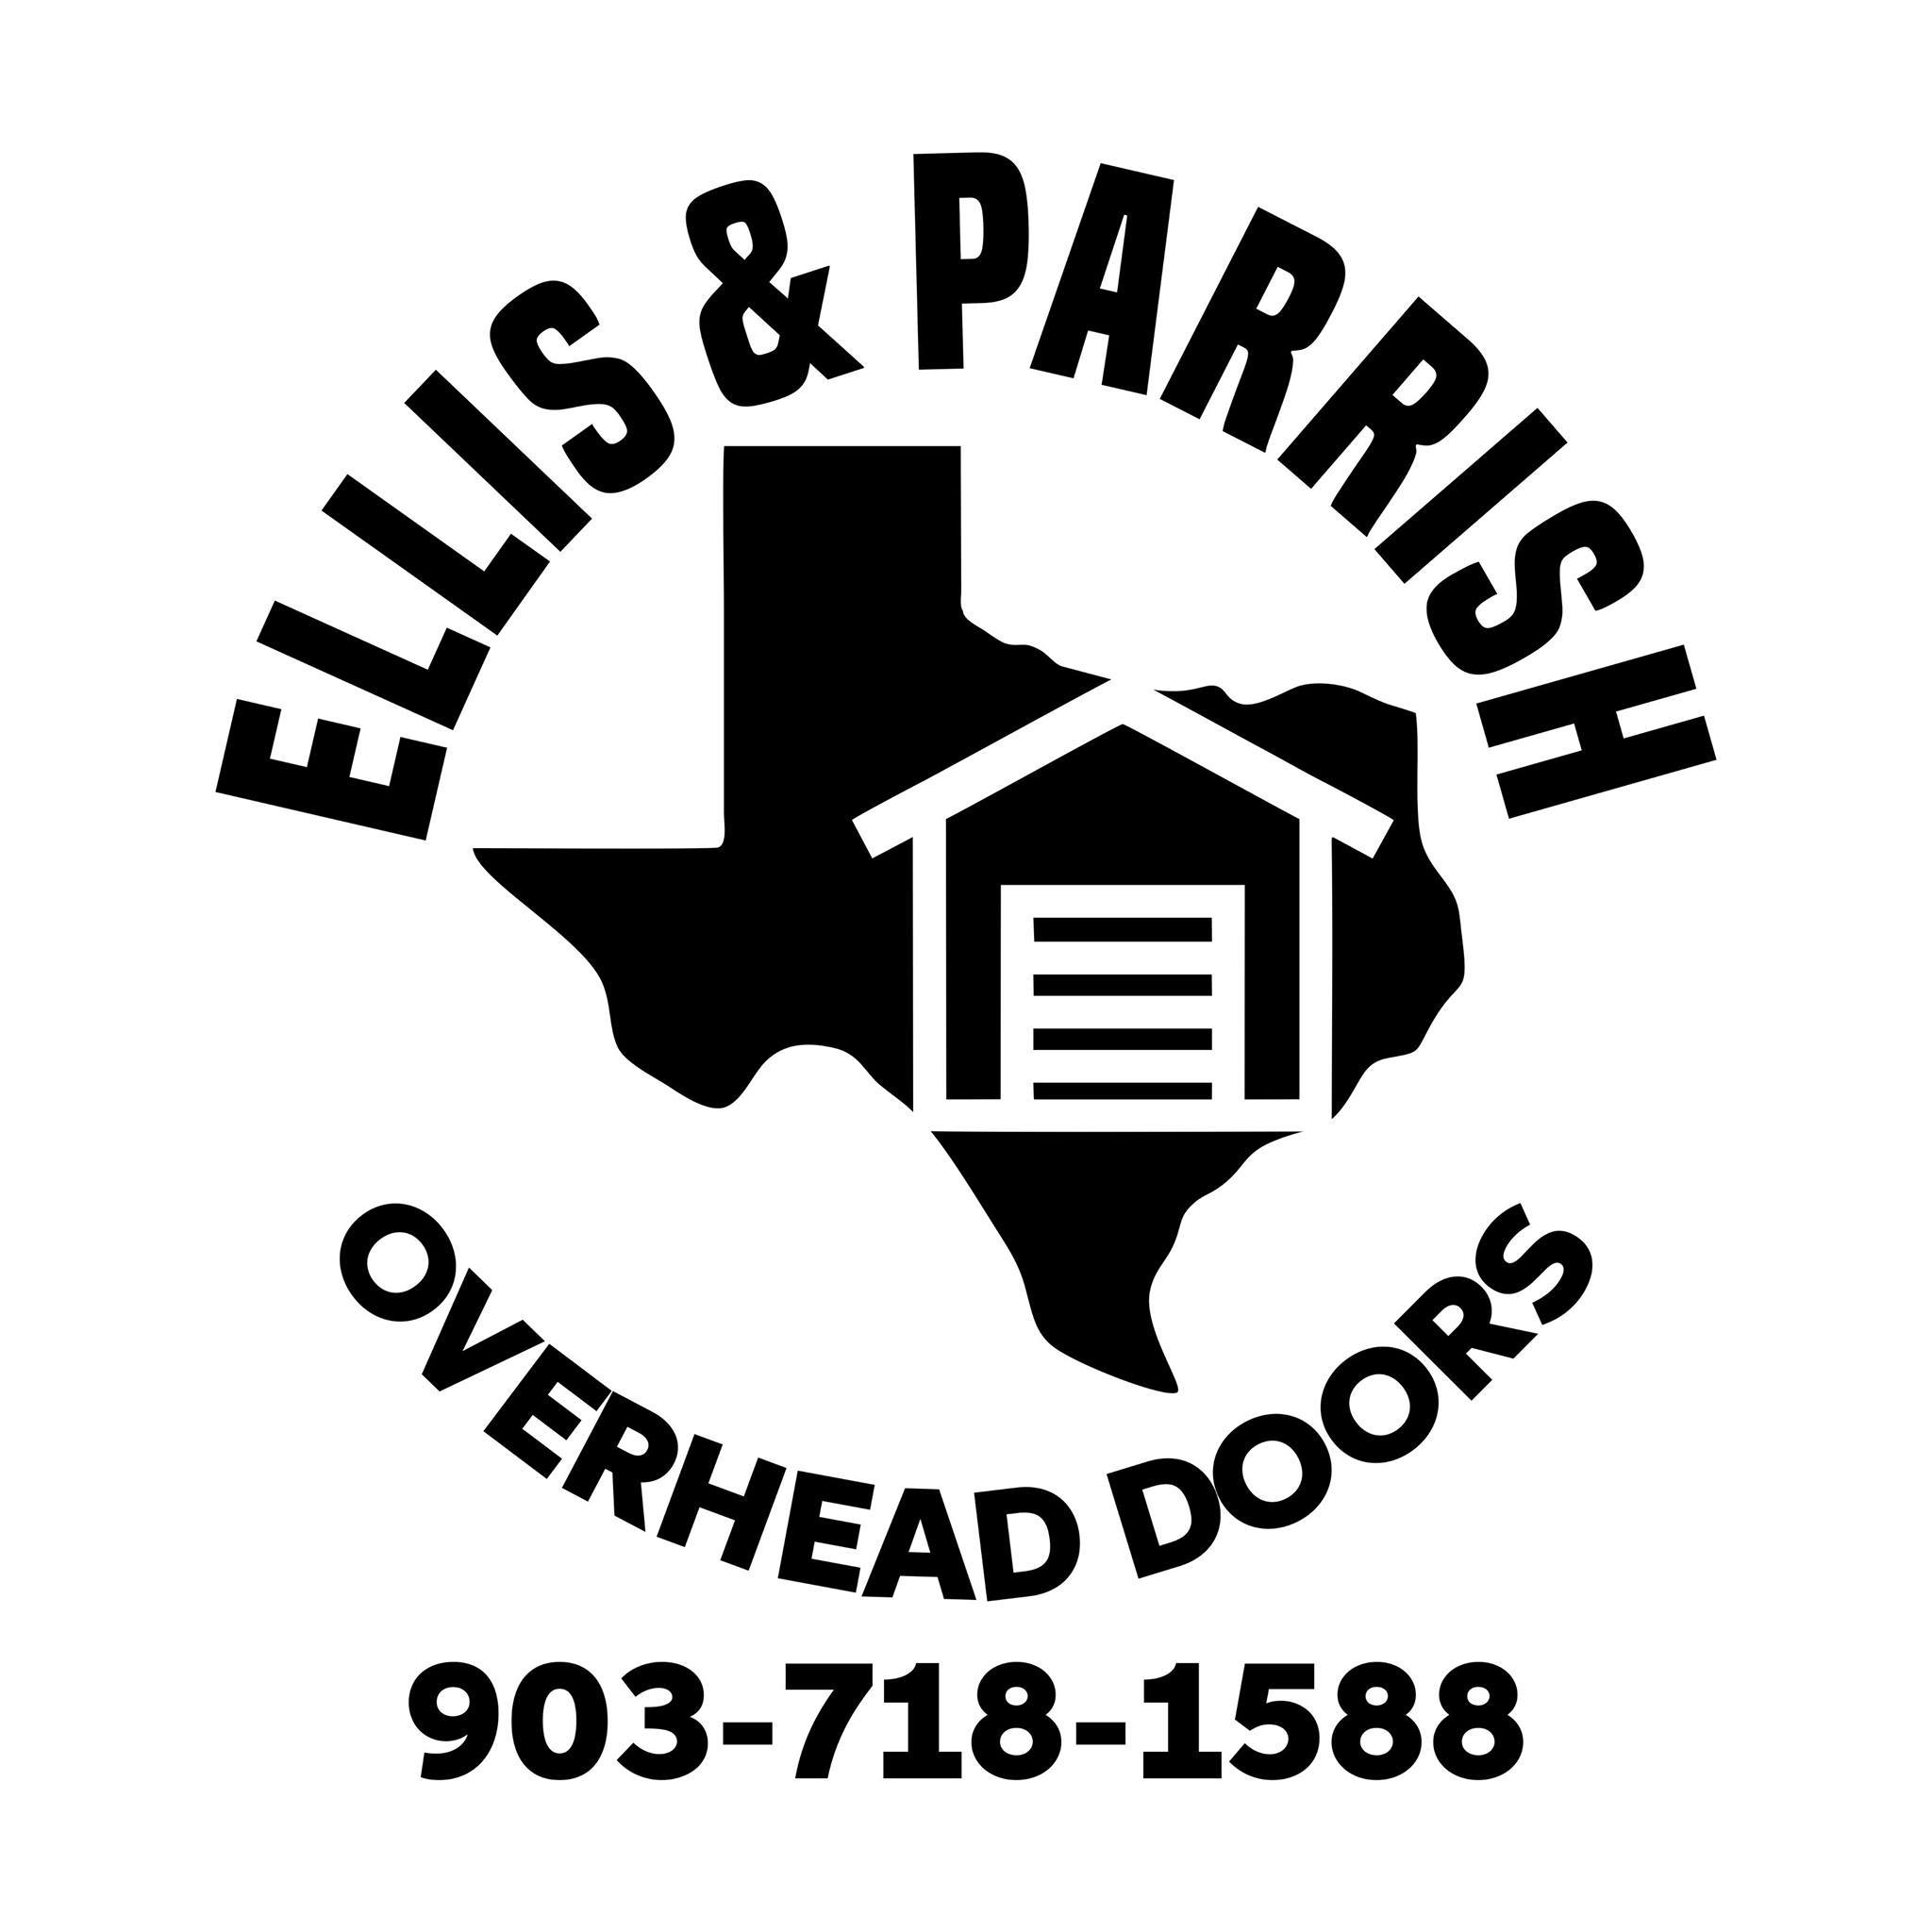 Ellis and Parrish Overhead Door